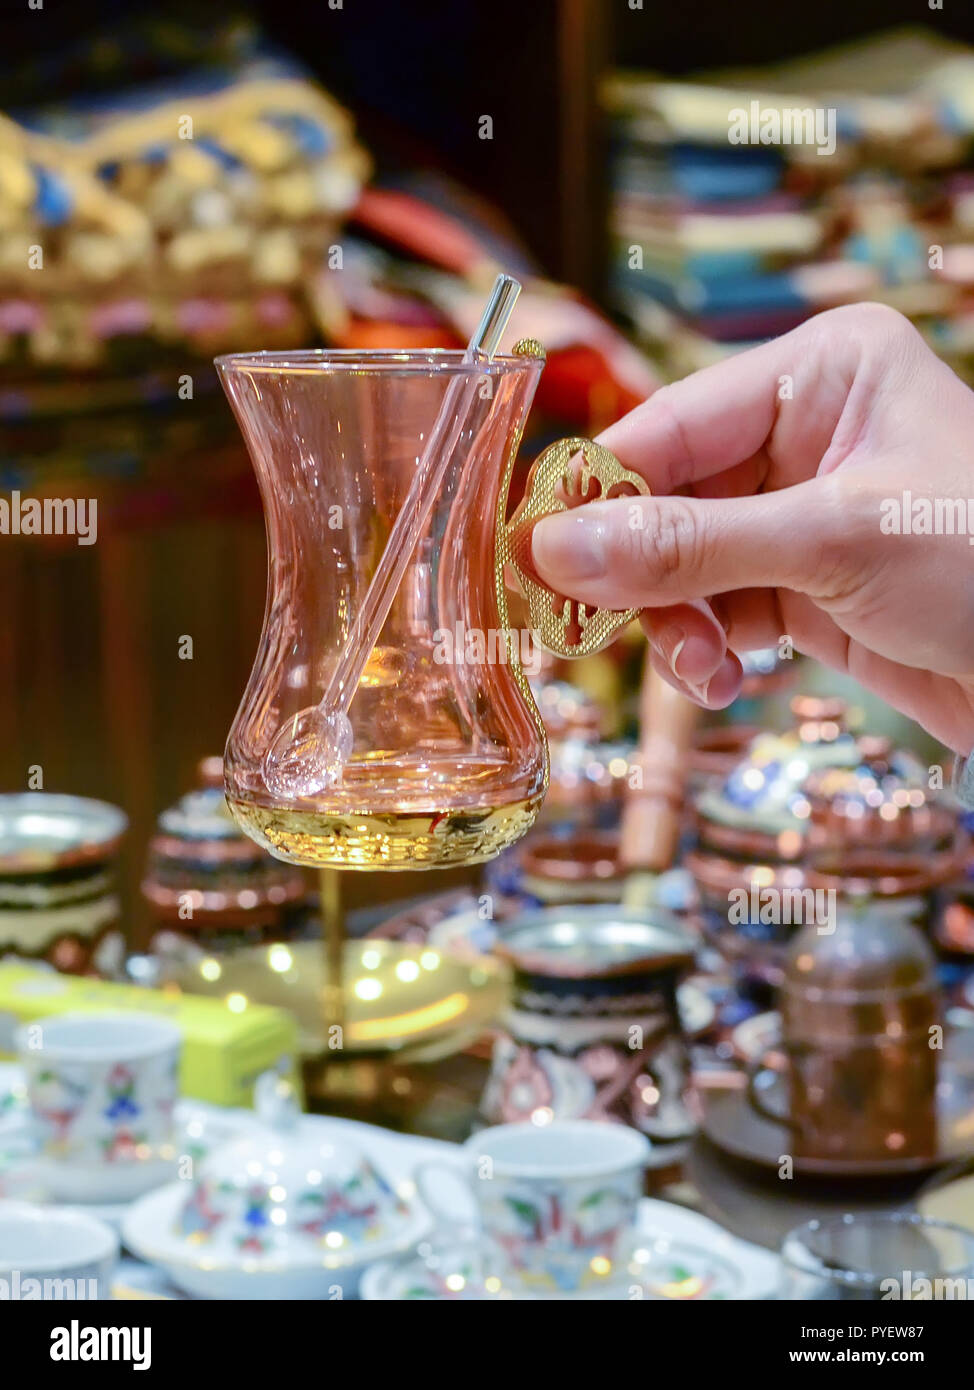 La main féminine est titulaire d'un verre de thé turc de souvenirs avec une cuillère. Banque D'Images